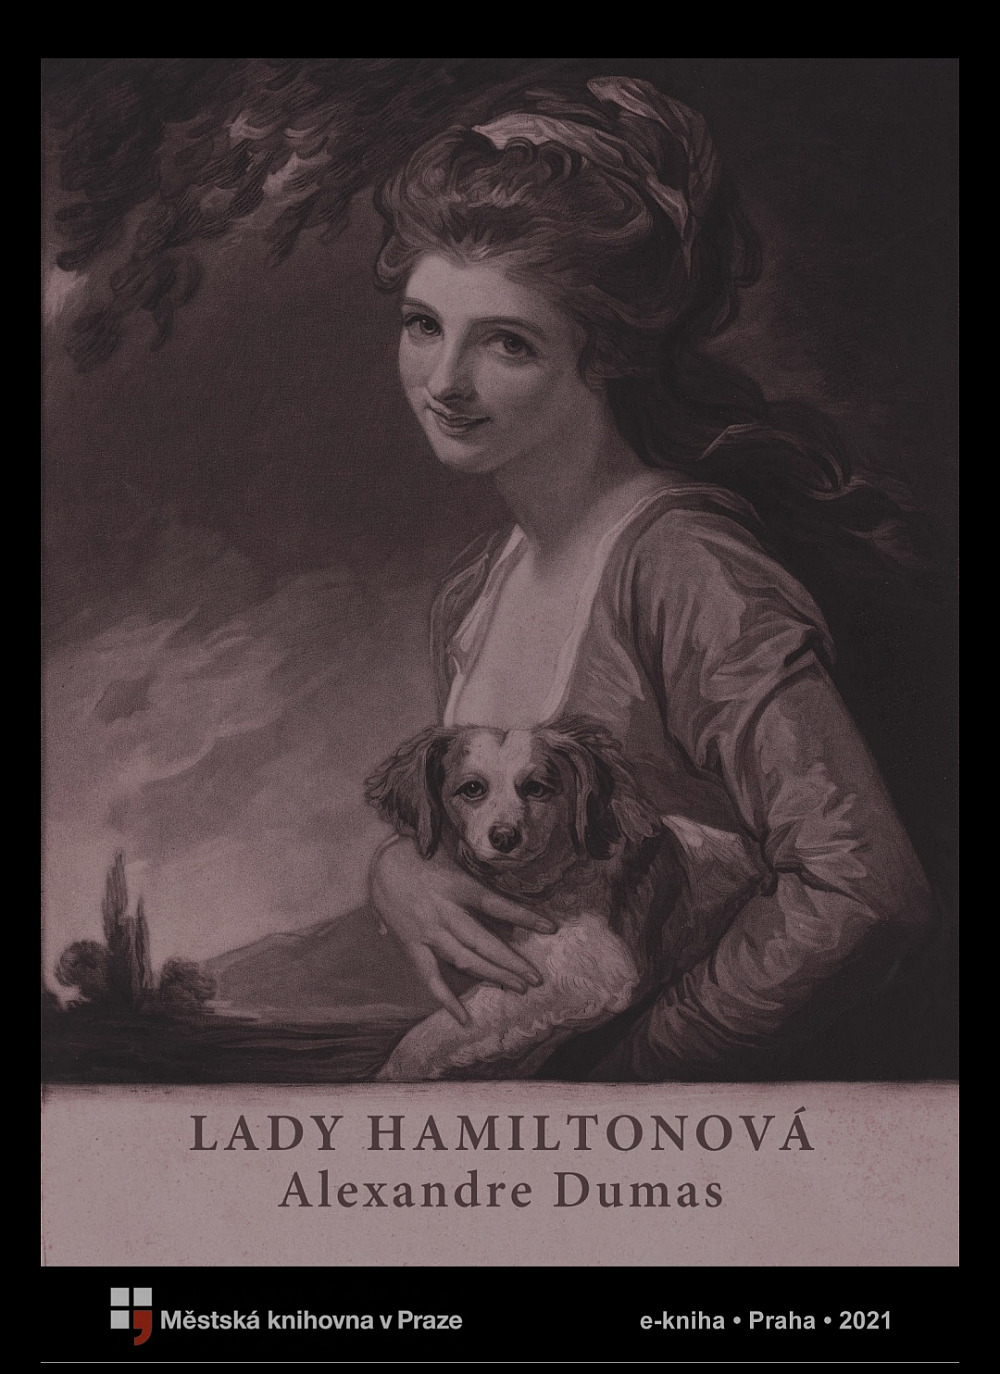 Lady Hamiltonová